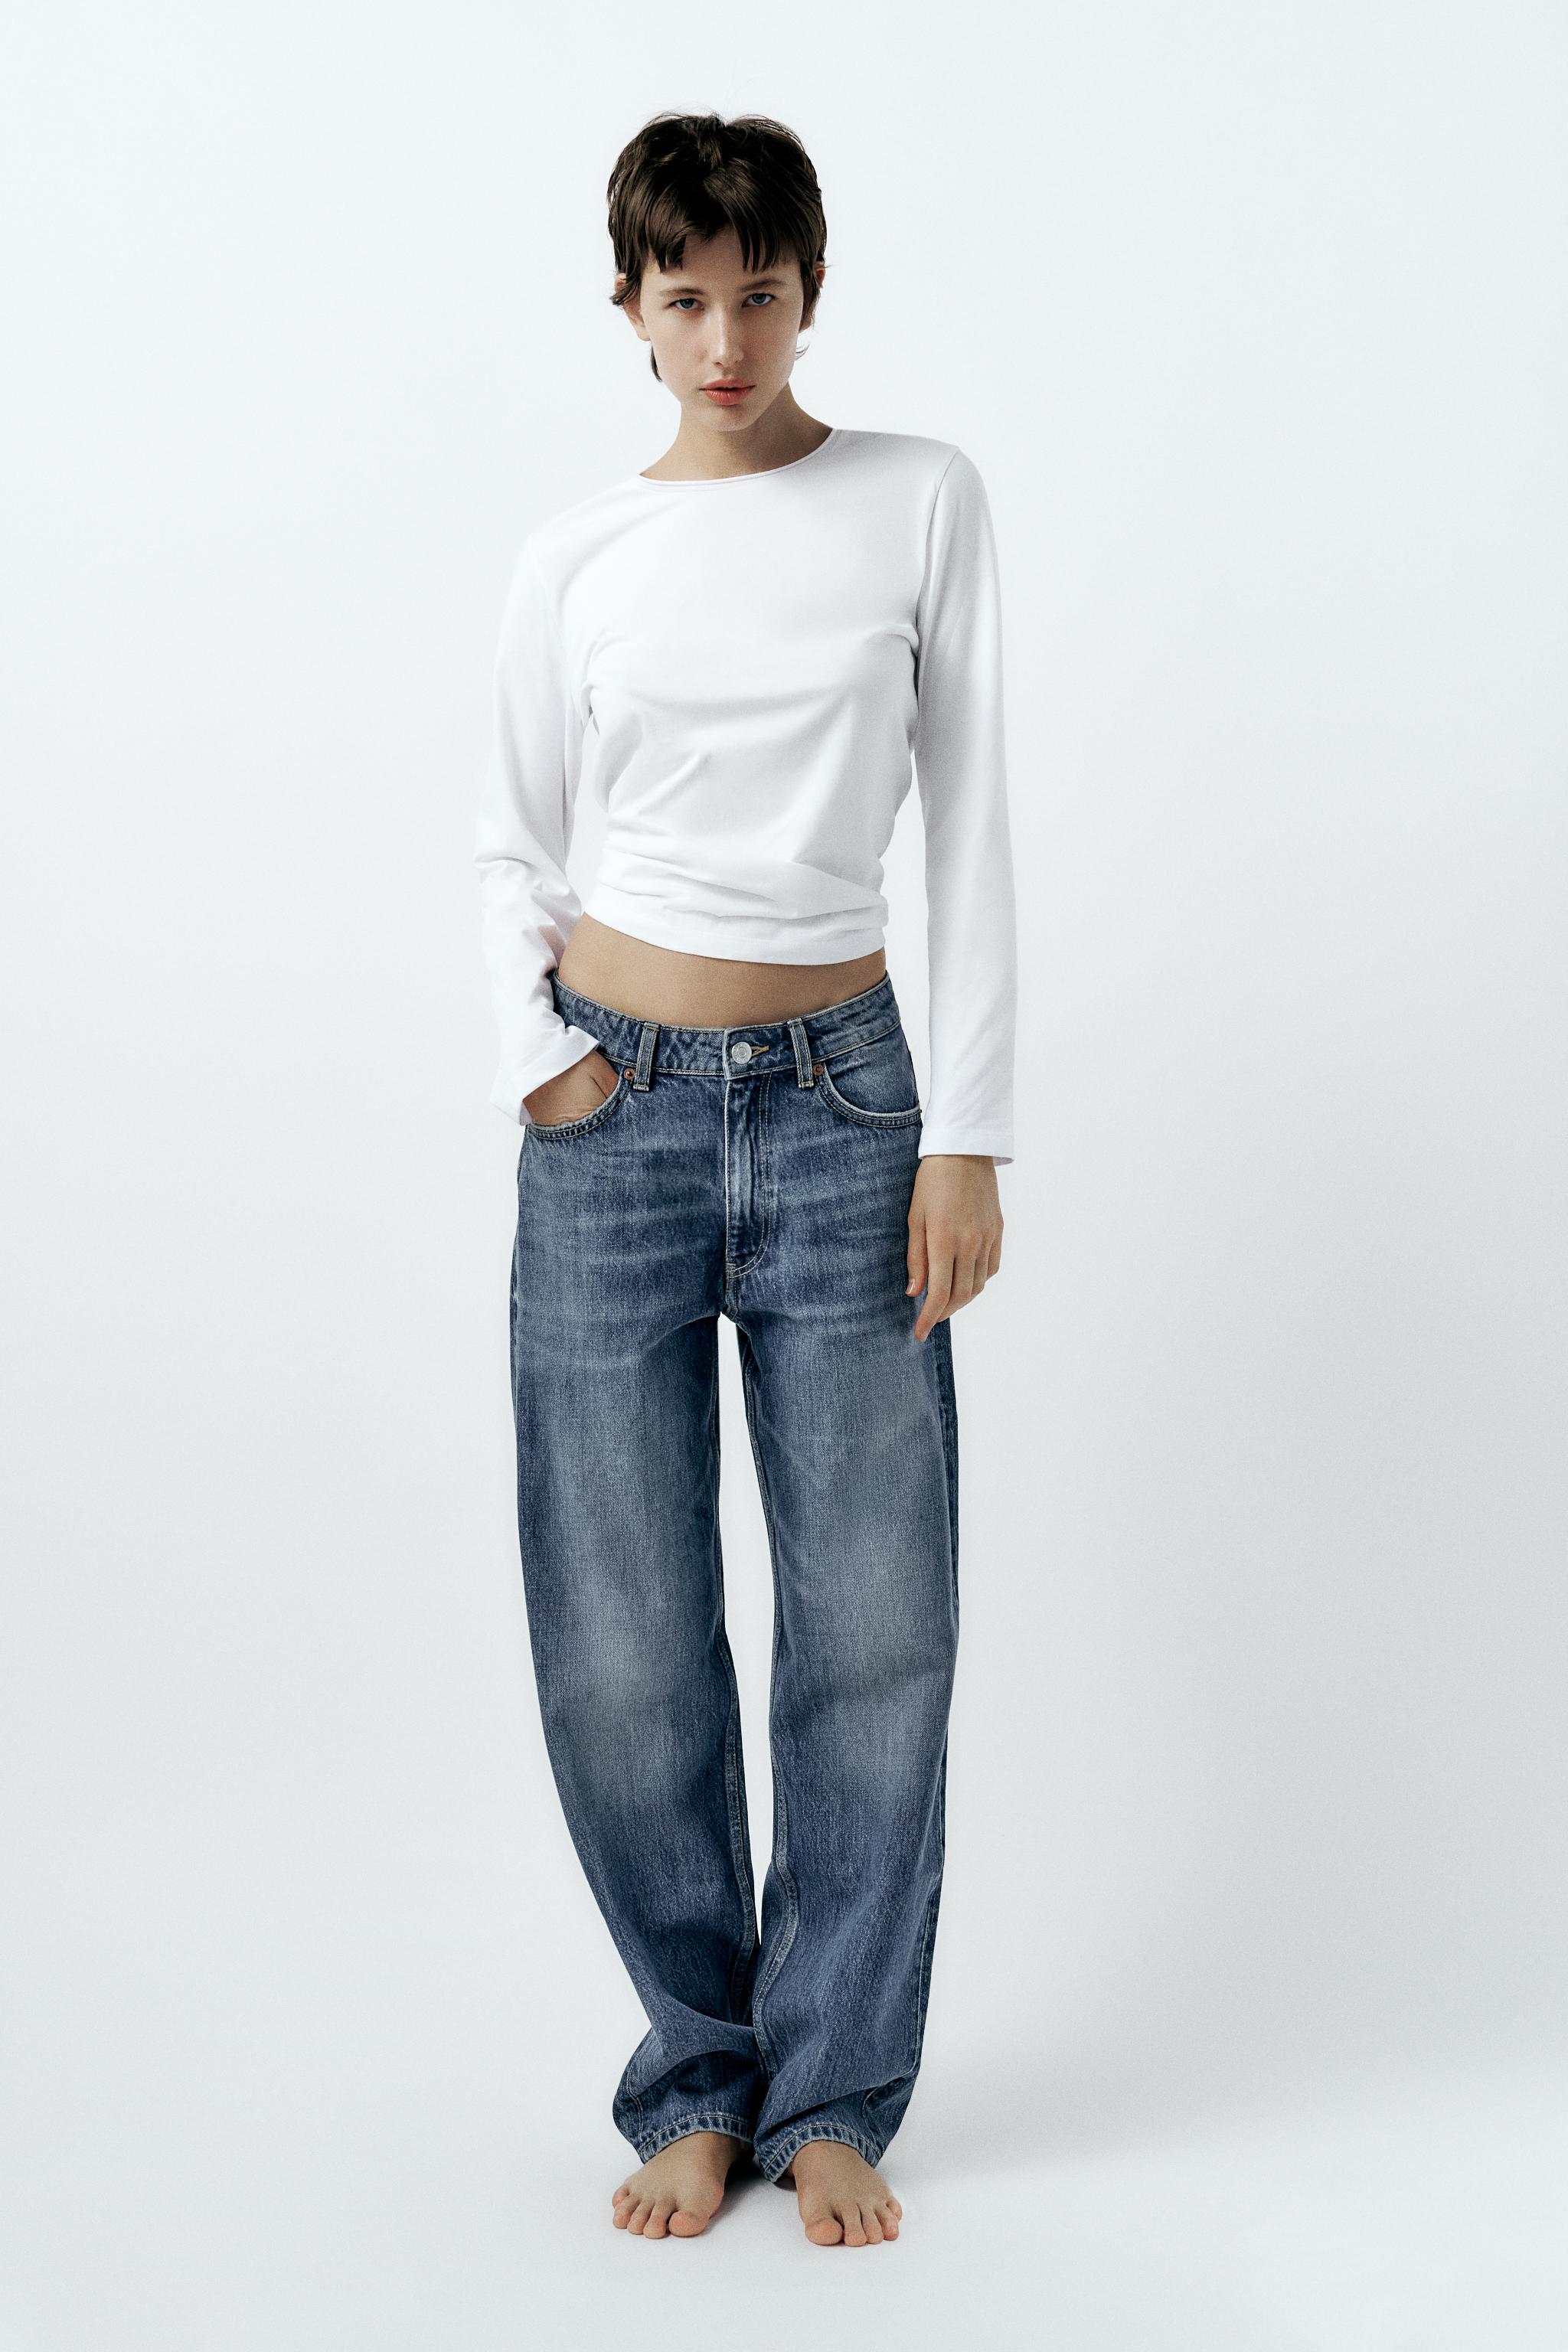 PZI Jeans, Pants & Jumpsuits, Pzi Womens Blue Denim Cotton Mid Rise  Straight Jeans Casual Pants Size 8 Short